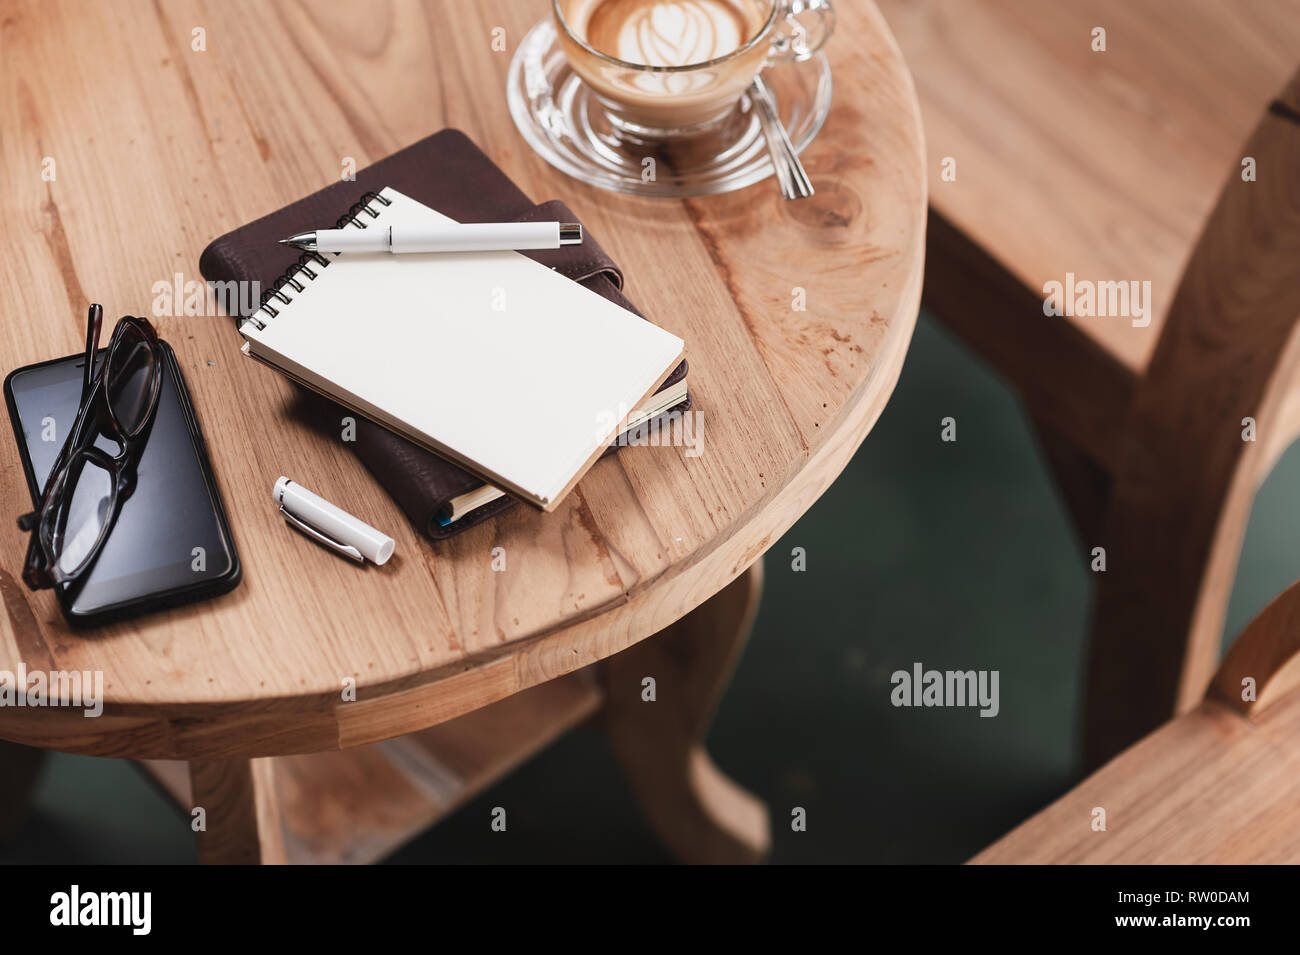 Abstrakte Szene geöffnet kleines Notizbuch, Stift, Brille, Handy, und Kaffee Tasse auf Holz. Kaffeepause und Zeit entspannen. Arbeiten von anywher Stockfoto